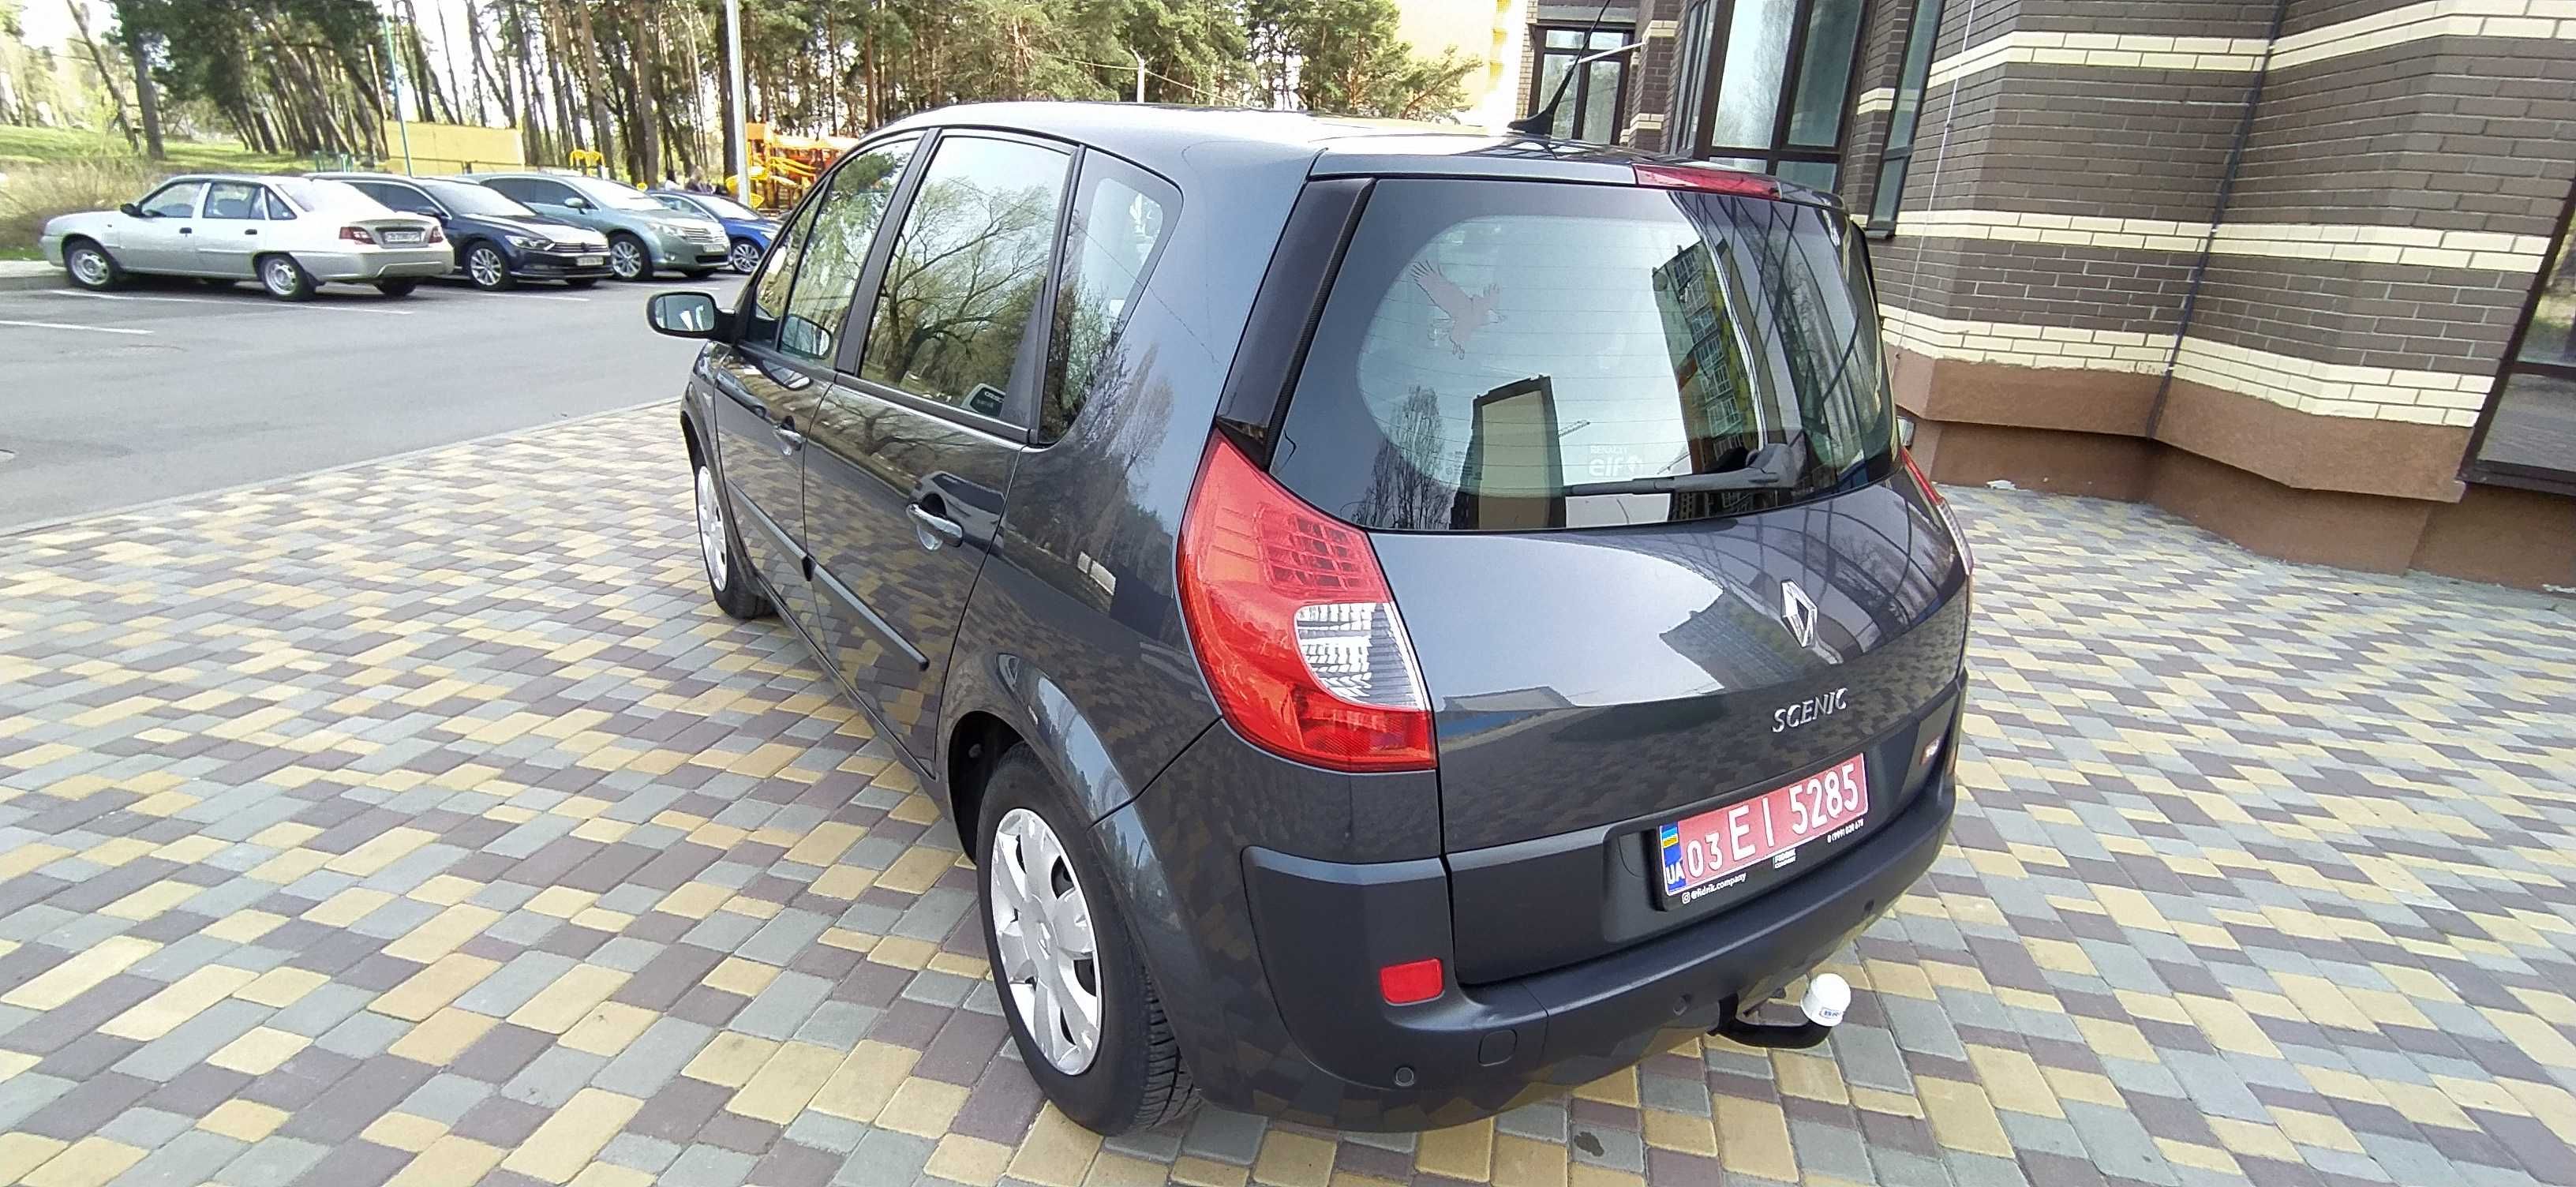 Продам свежепригнанный Renault Scenic 1,6 из Германии.